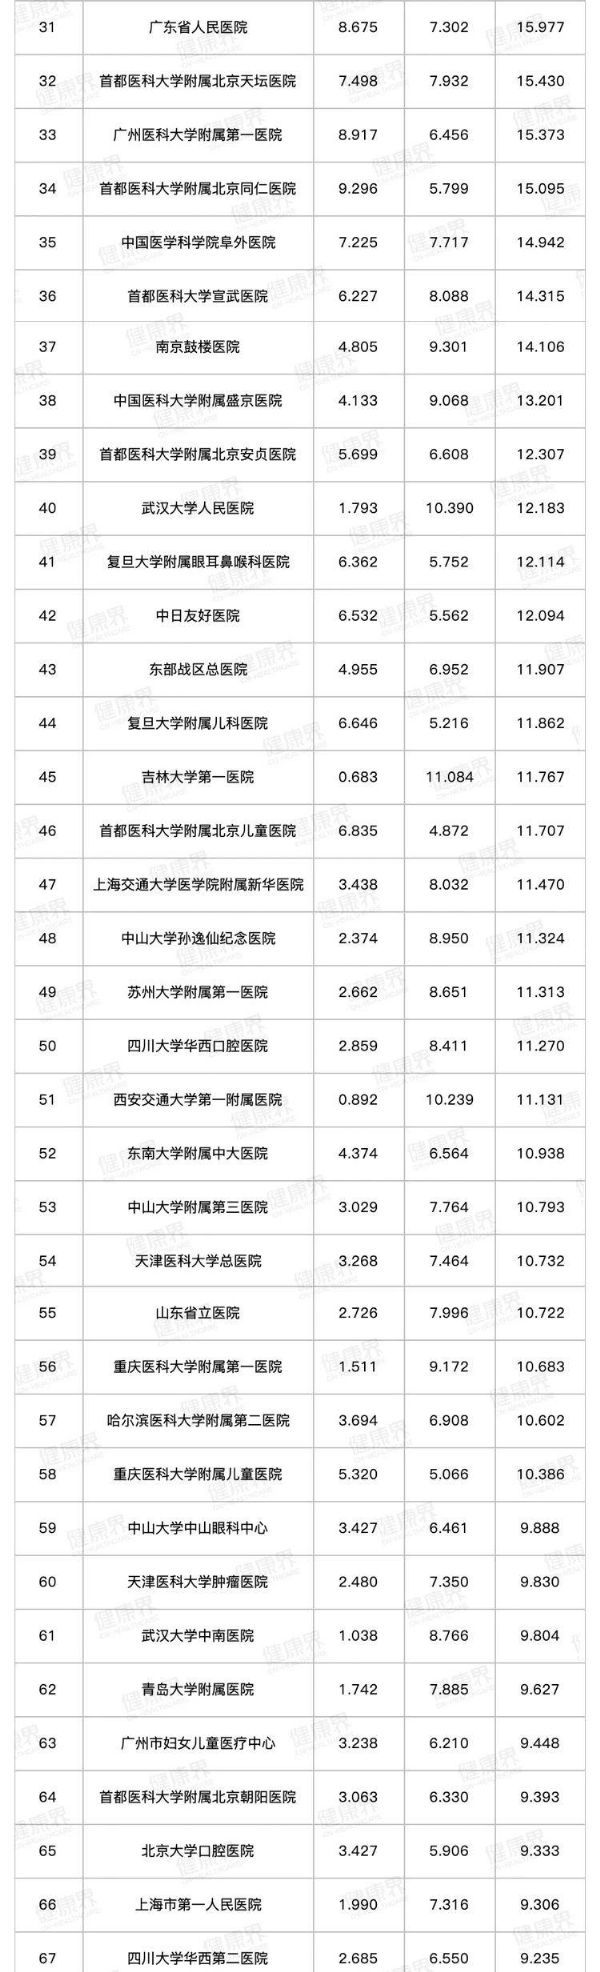 医学排行榜_2019年度中国医院排行榜(综合)